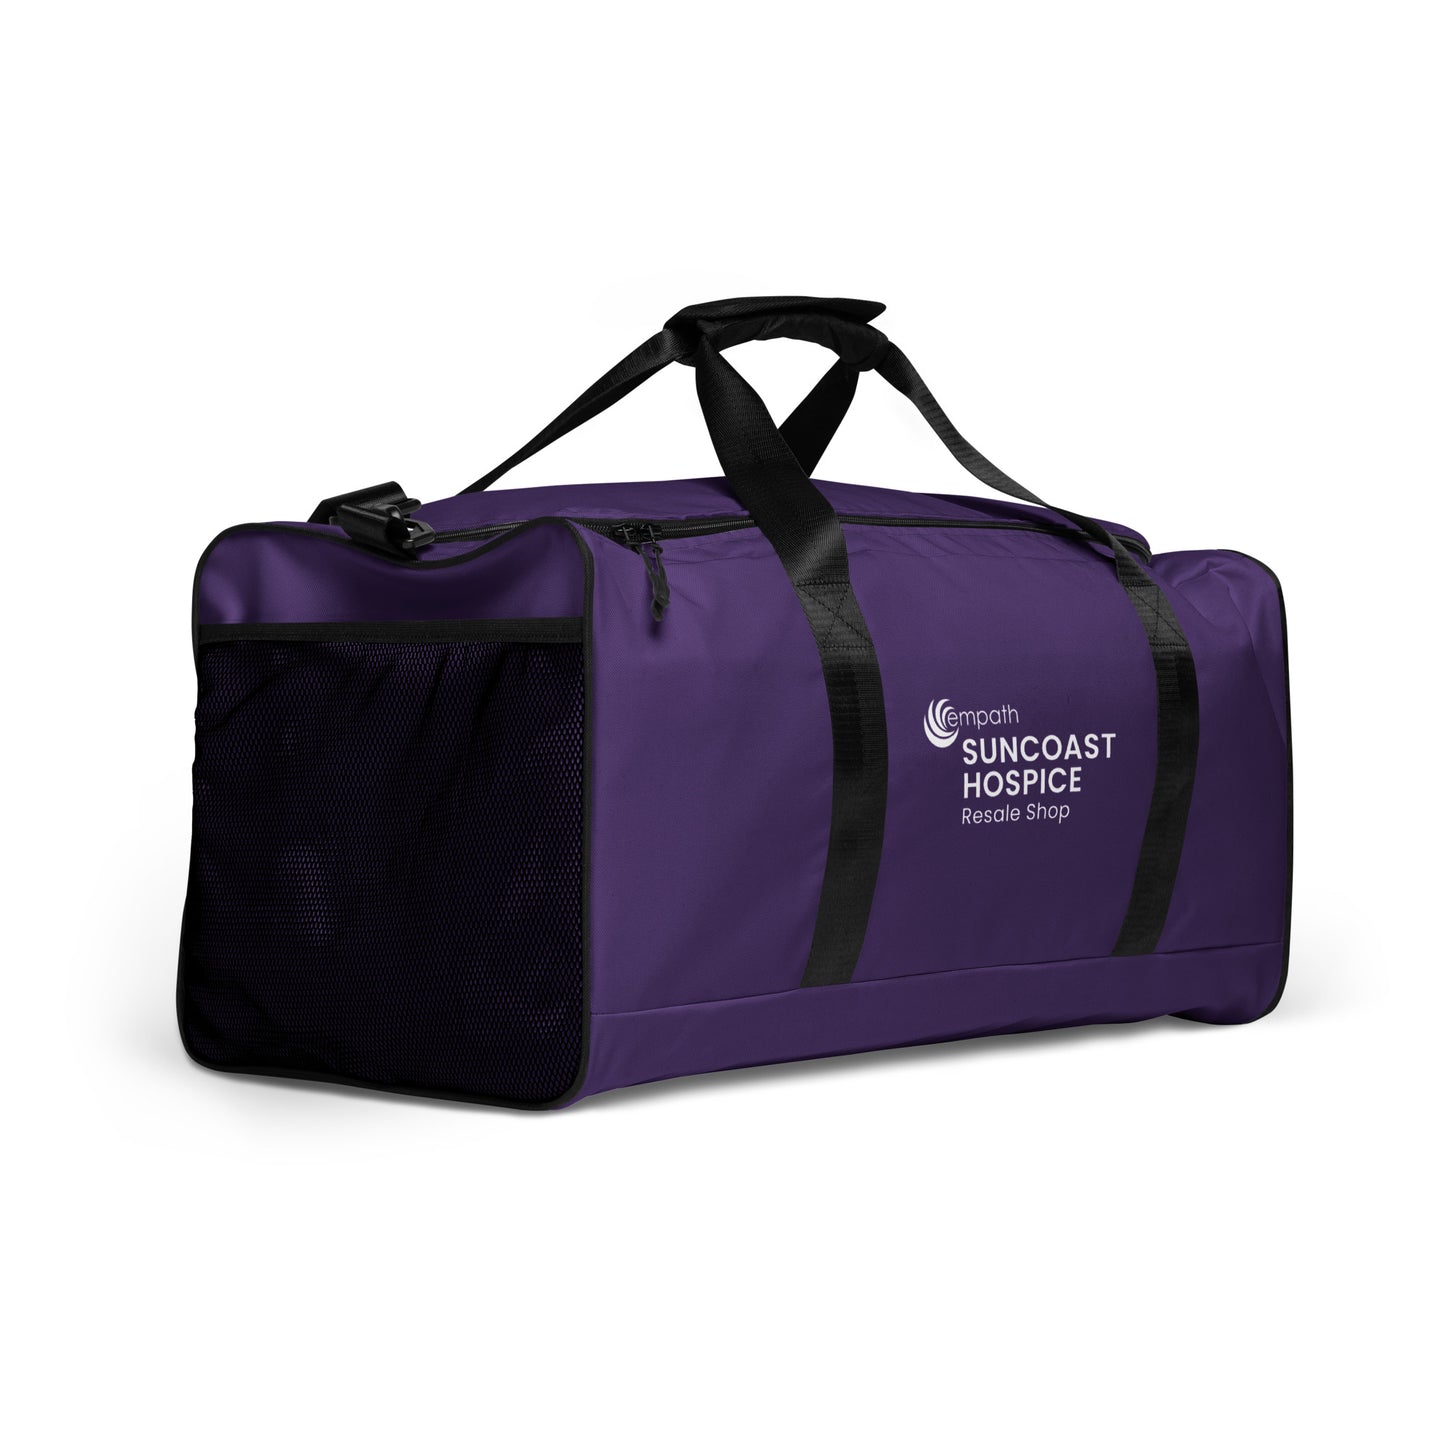 Duffle bag  - Suncoast Hospice Resale Shop